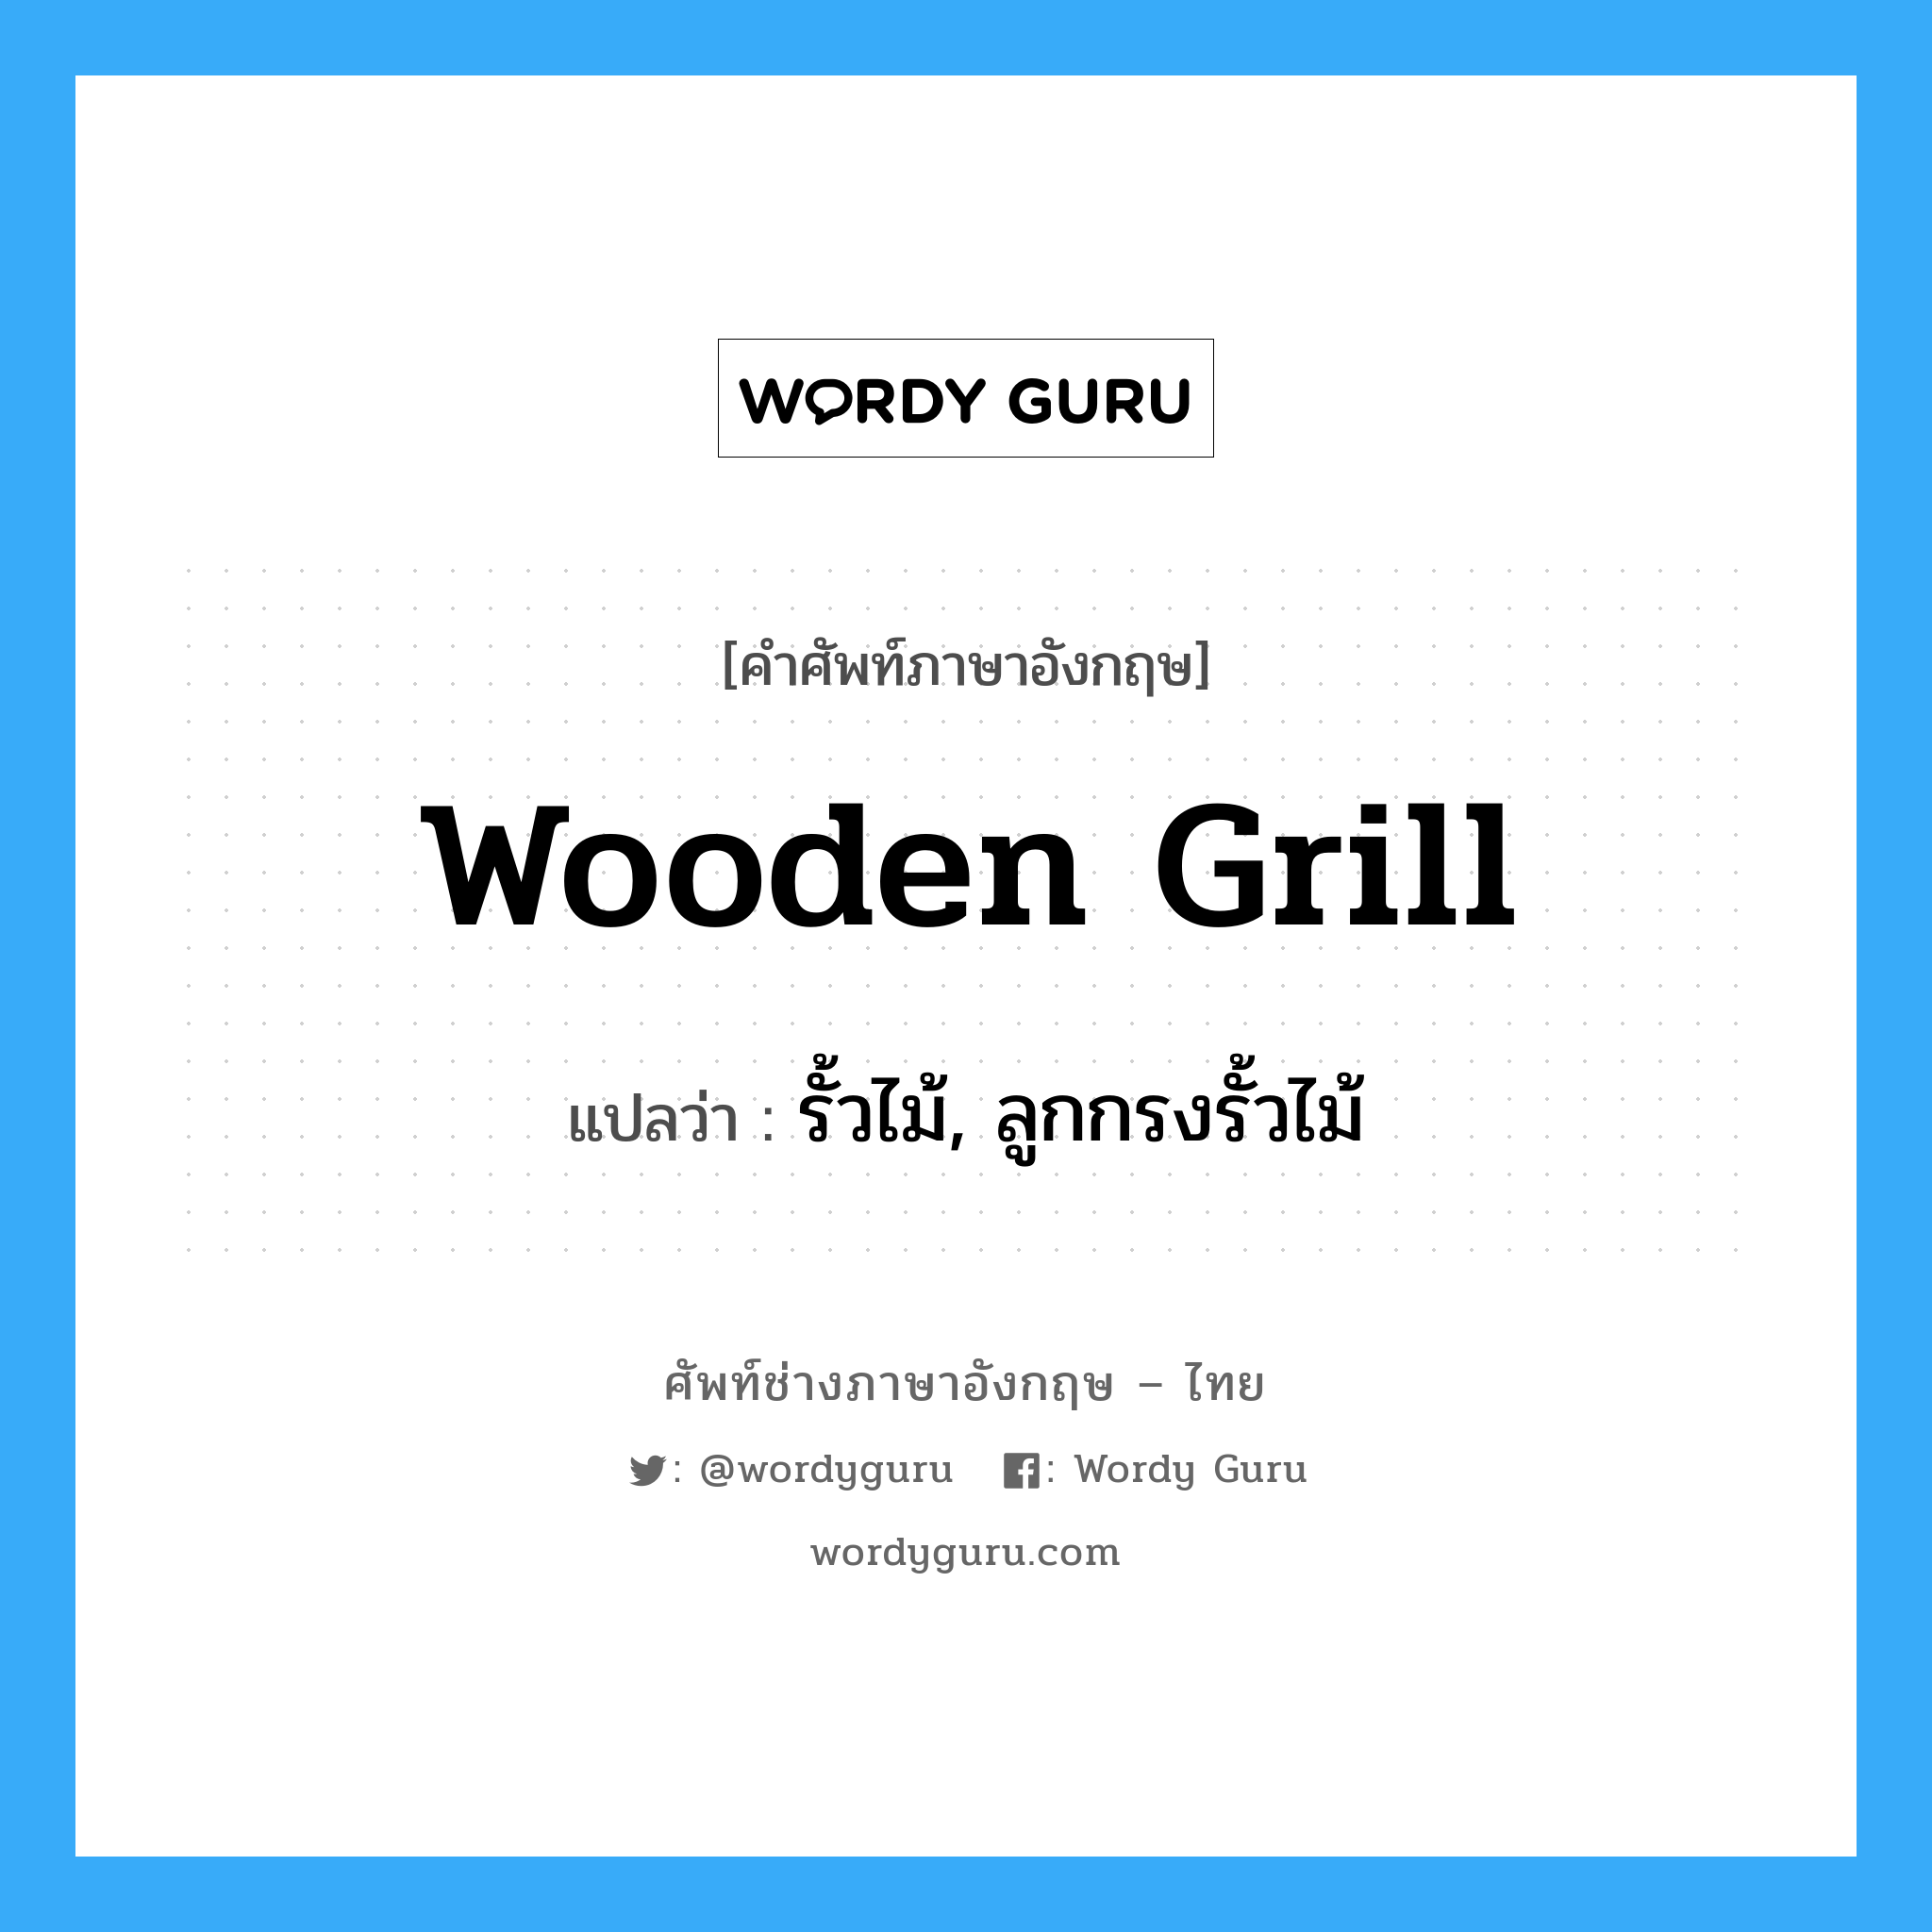 รั้วไม้, ลูกกรงรั้วไม้ ภาษาอังกฤษ?, คำศัพท์ช่างภาษาอังกฤษ - ไทย รั้วไม้, ลูกกรงรั้วไม้ คำศัพท์ภาษาอังกฤษ รั้วไม้, ลูกกรงรั้วไม้ แปลว่า wooden grill